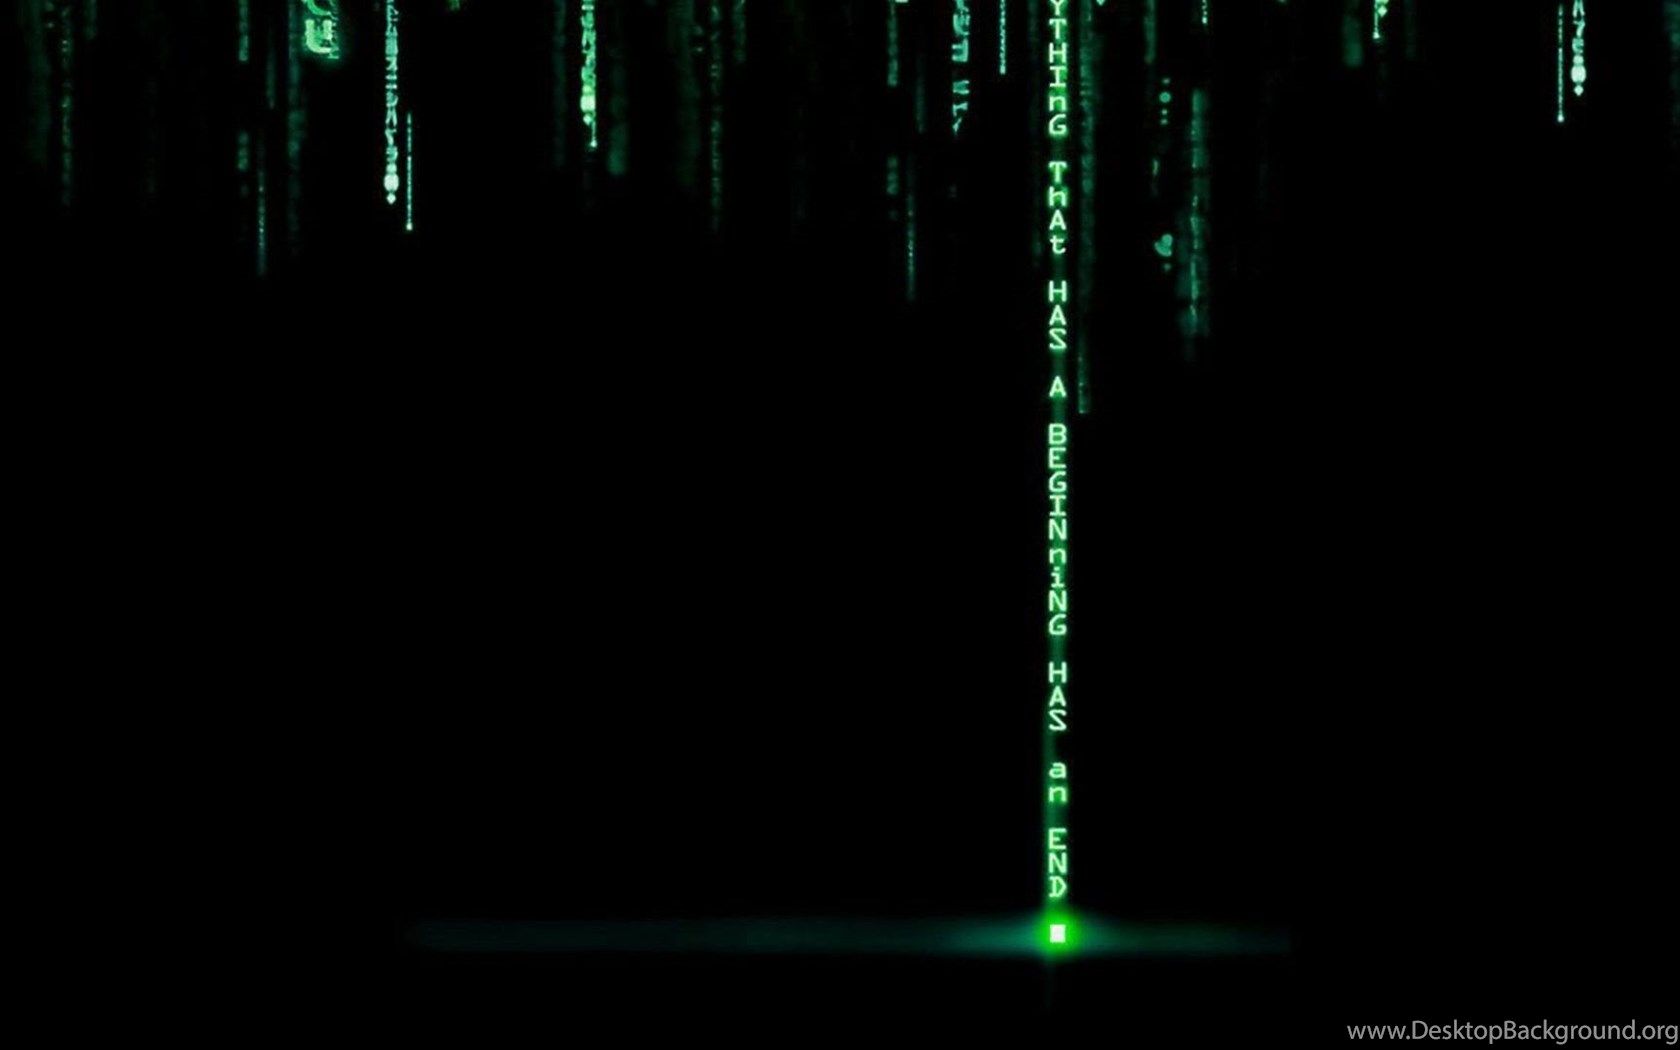 Matrix Desktop Wallpaper In HD The Code 1 2 3 4 5 Desktop Background